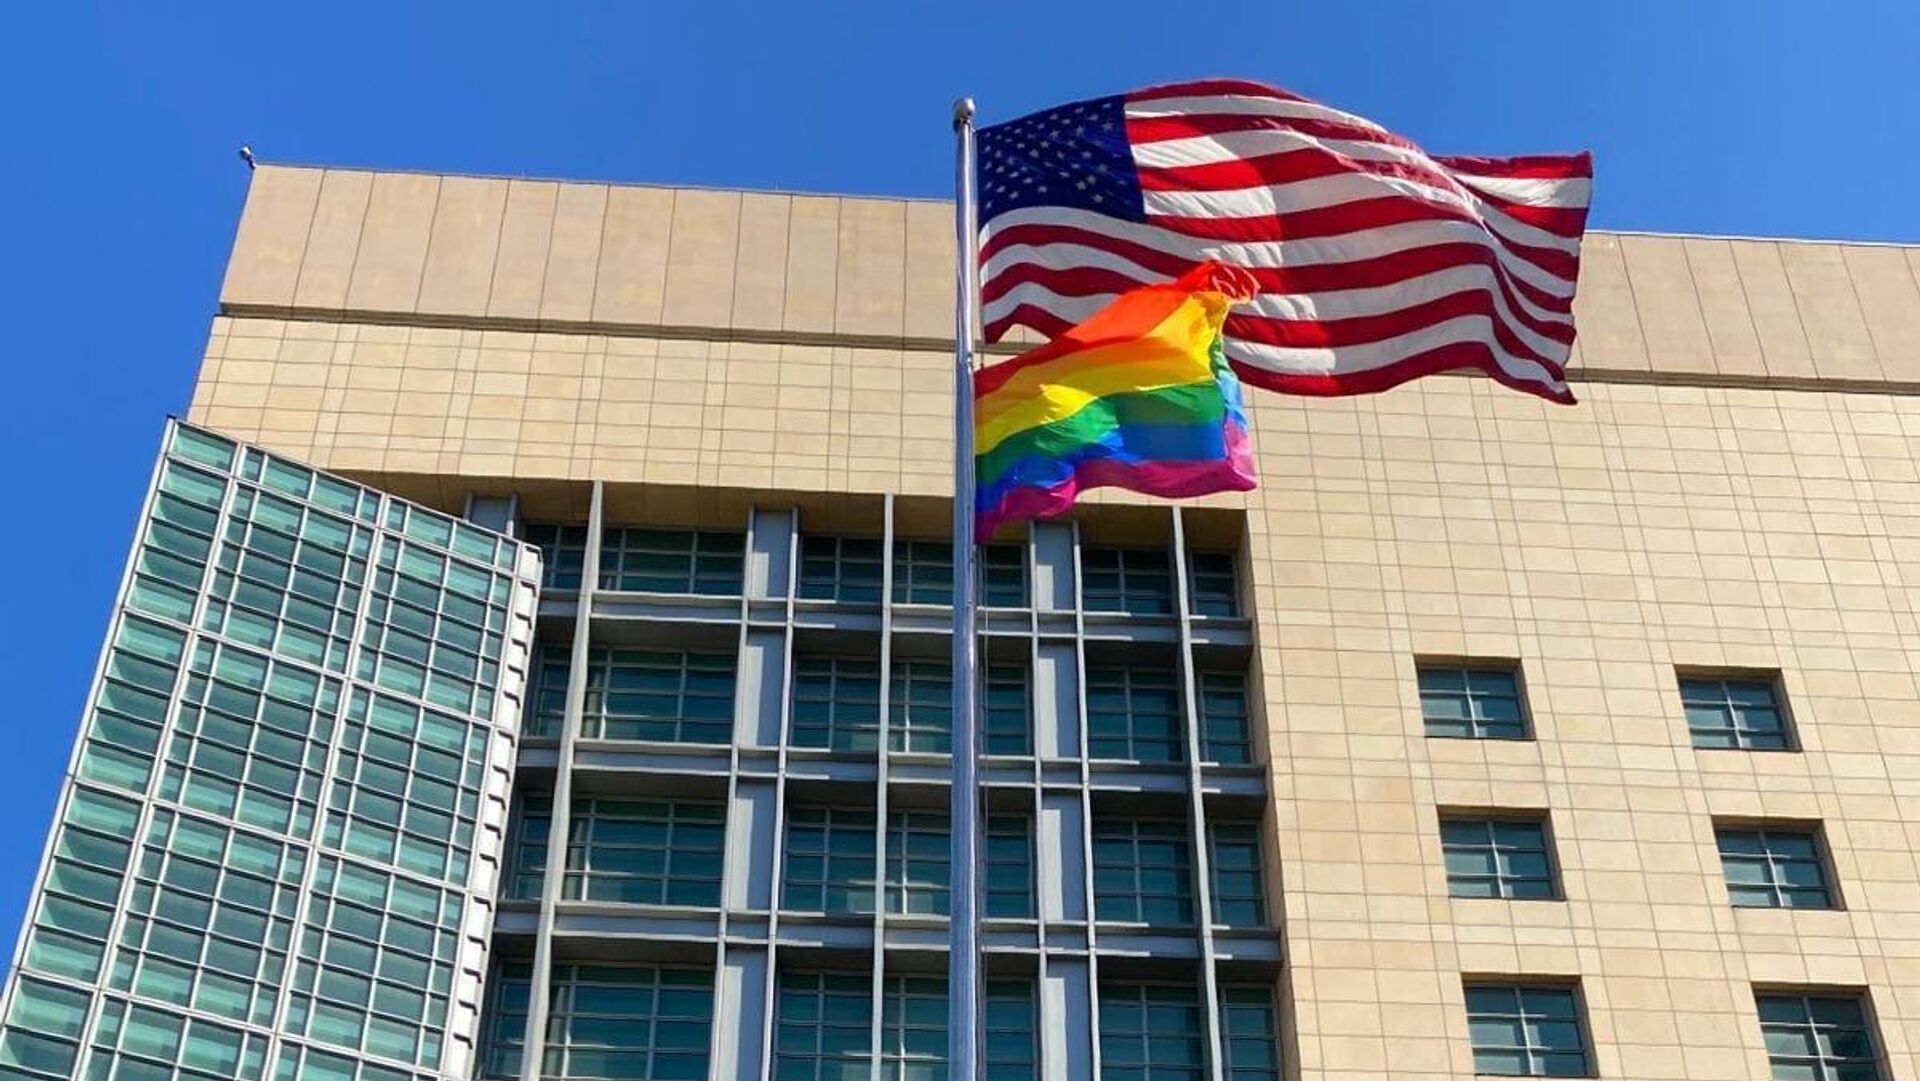 Cờ LGBT trên tòa nhà Đại sứ quán Mỹ: Cờ LGBT được hiện hữu trên tòa nhà Đại sứ quán Mỹ, mang ý nghĩa là sự cảm thông và ủng hộ của Hoa Kỳ đối với cộng đồng LGBT. Hãy cùng đến và lưu giữ những khoảnh khắc đầy ý nghĩa tại đây, để chứng kiến sự tiến bộ và sự đổi mới của nền văn minh con người, đánh dấu một bước ngoặt quan trọng trên con đường đấu tranh cho quyền lợi và sự công bằng cho cộng đồng LGBT trên toàn thế giới.